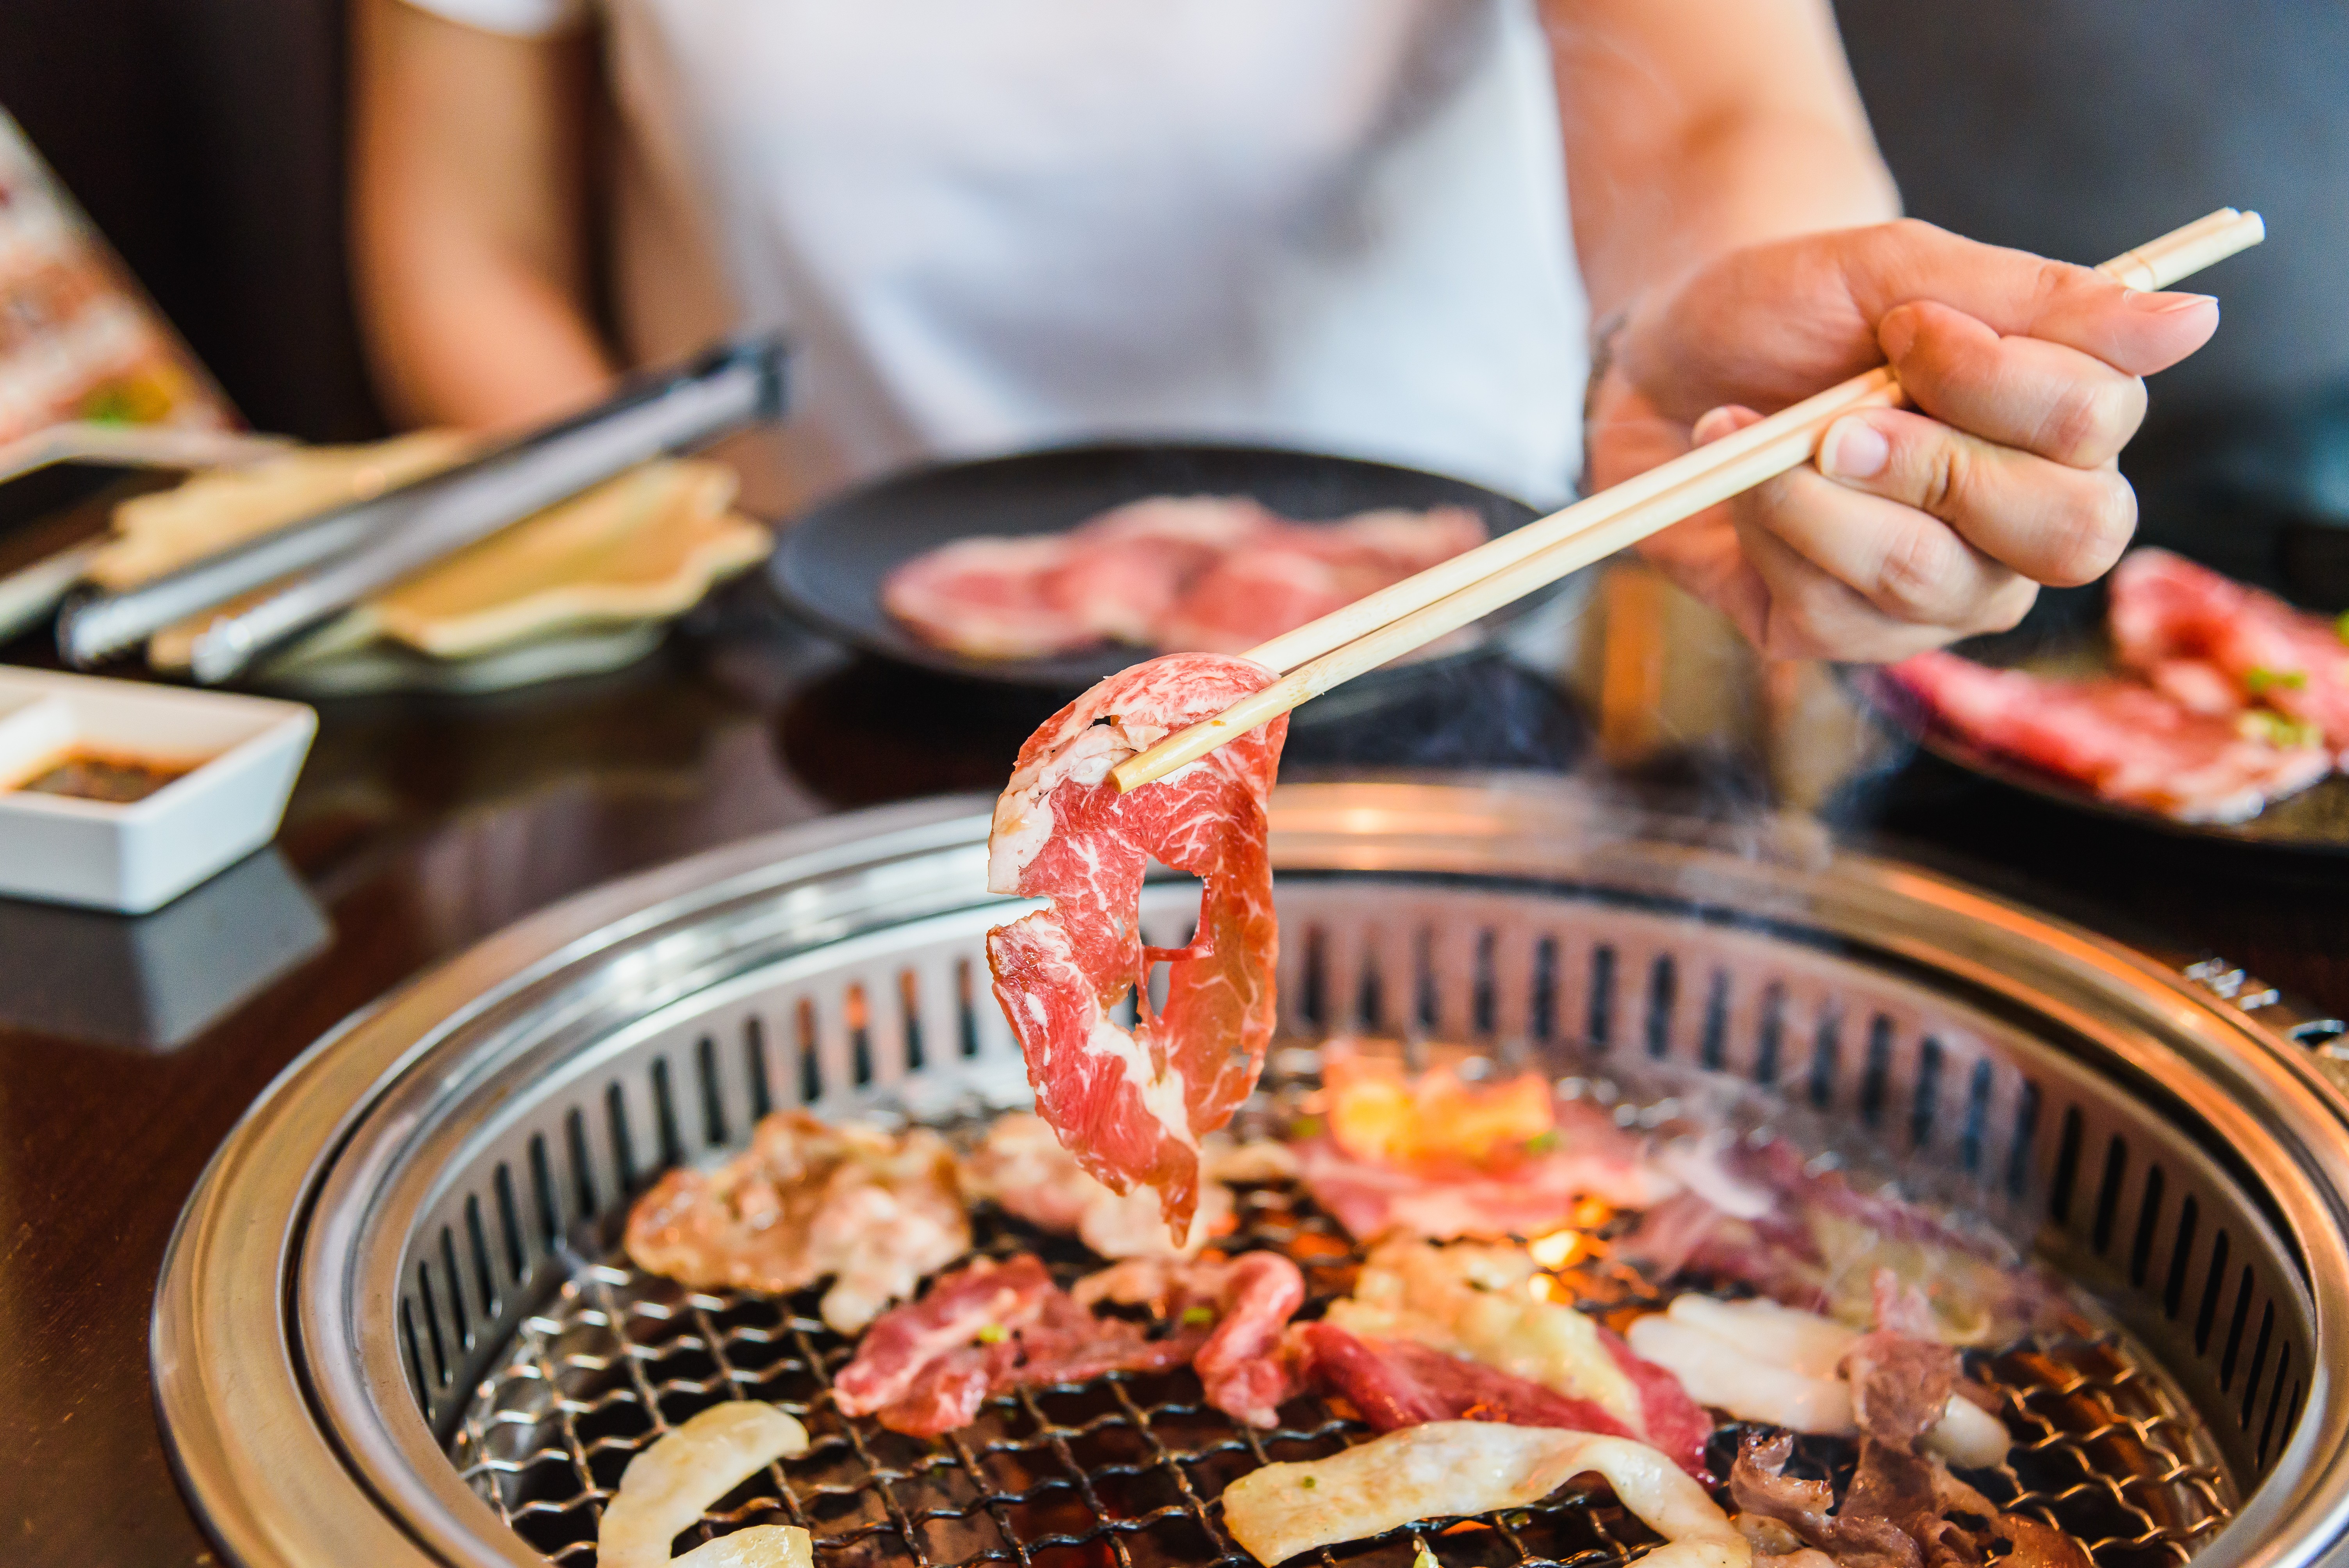 Мясо едят г. Рестораны якинику в Японии. Японские блюда на гриле. Японское барбекю. Корейская еда.